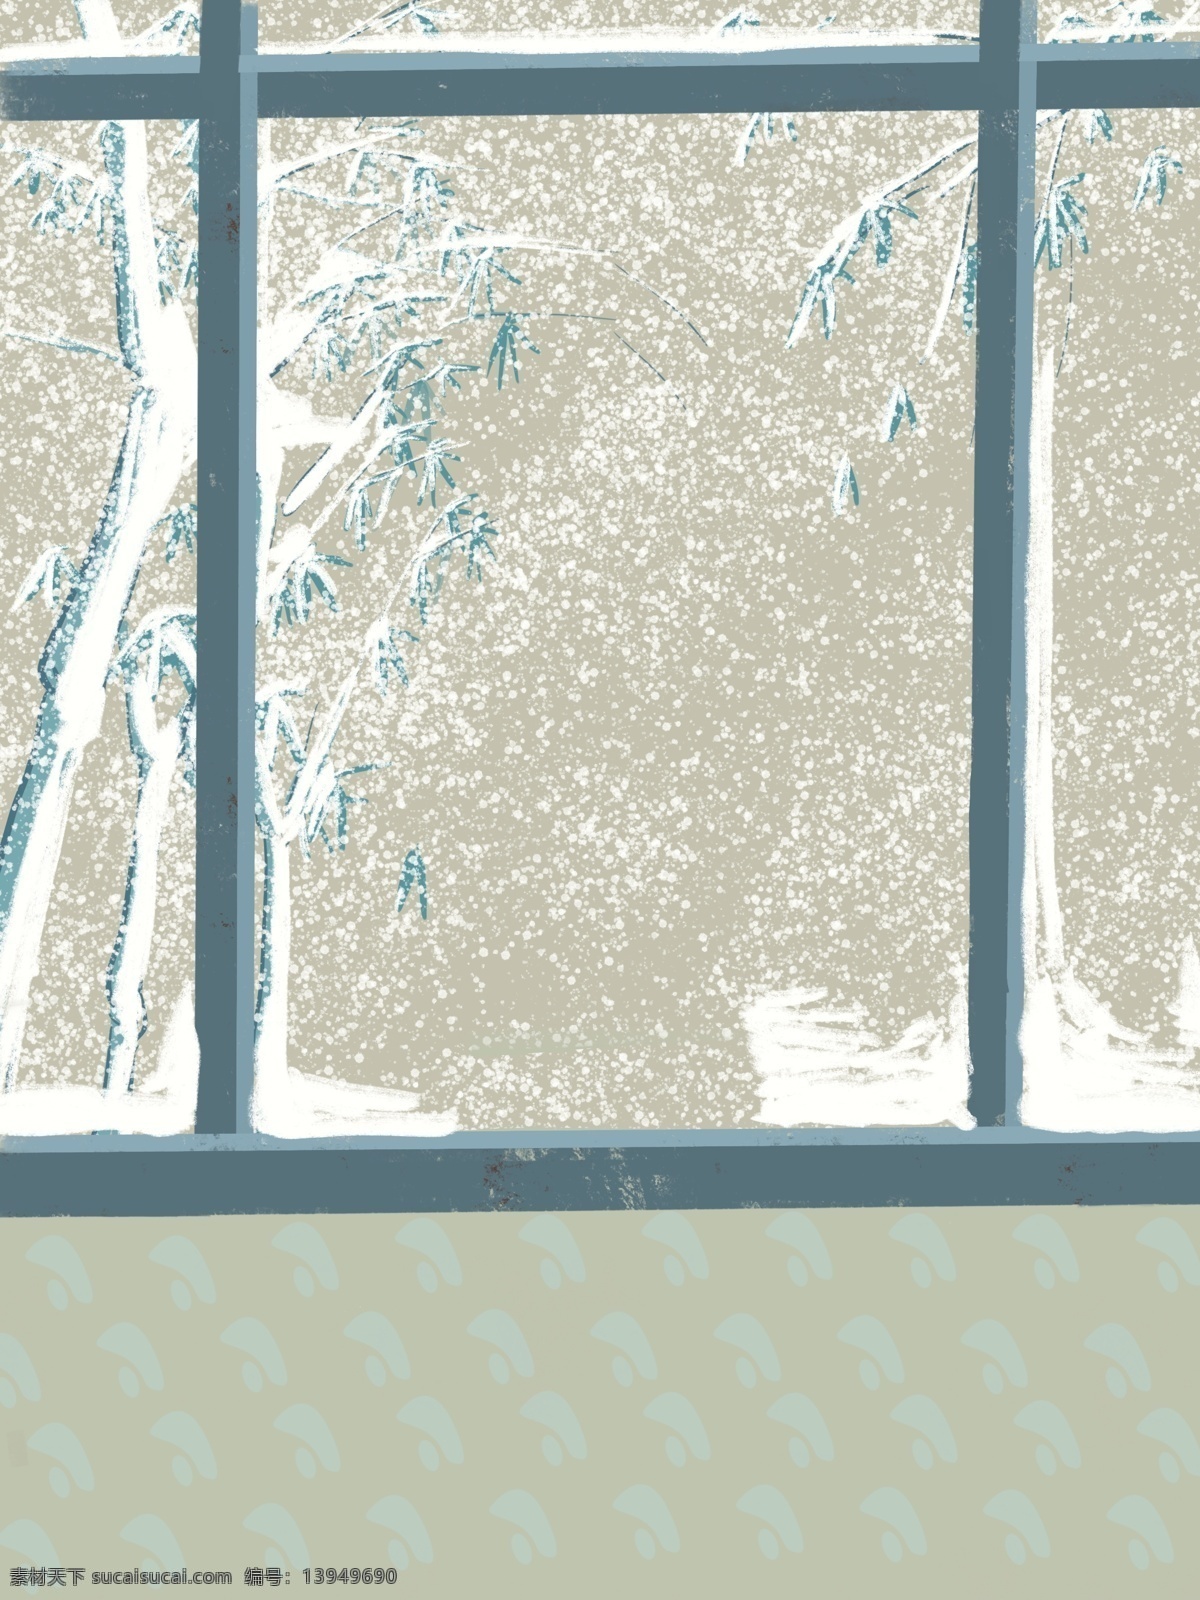 冬季 小雪 窗外 风景 背景 窗外风景 传统节气 中国风节气 冬天 背景设计 温馨室内布置